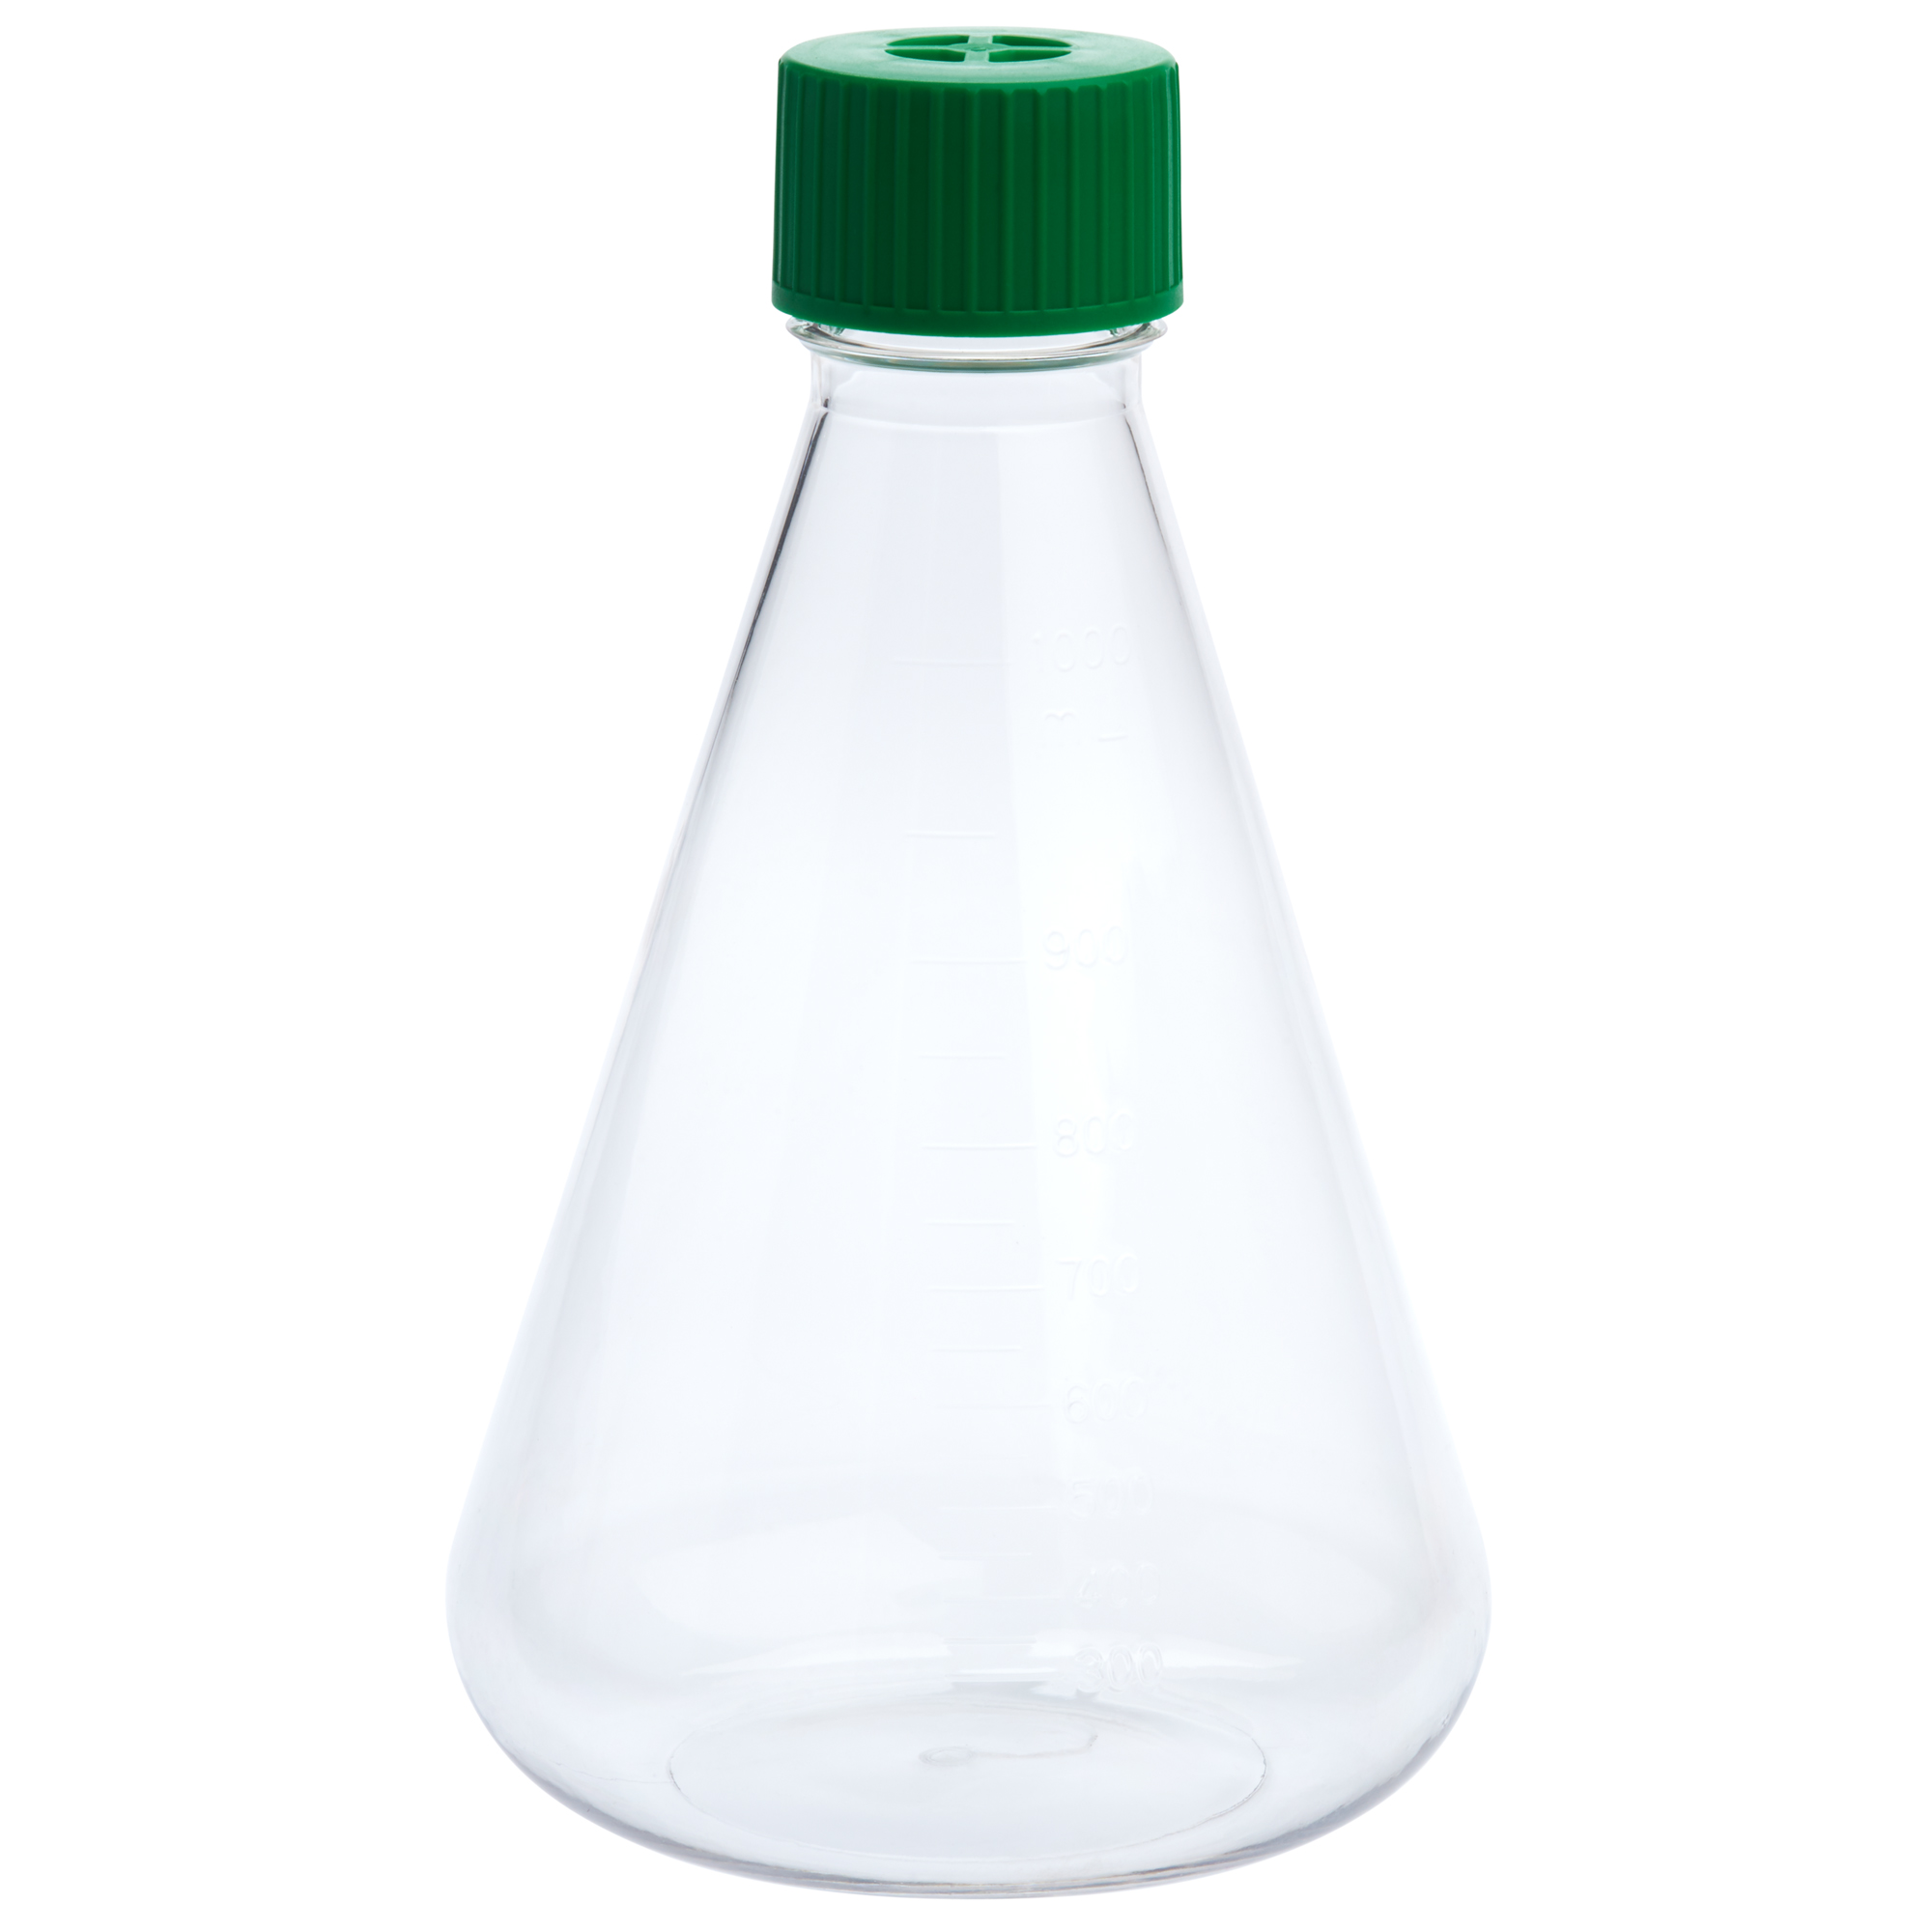 Celltreat Flask Cap, Vent (Fits 75cm2 & 250ml), Sterile 229397